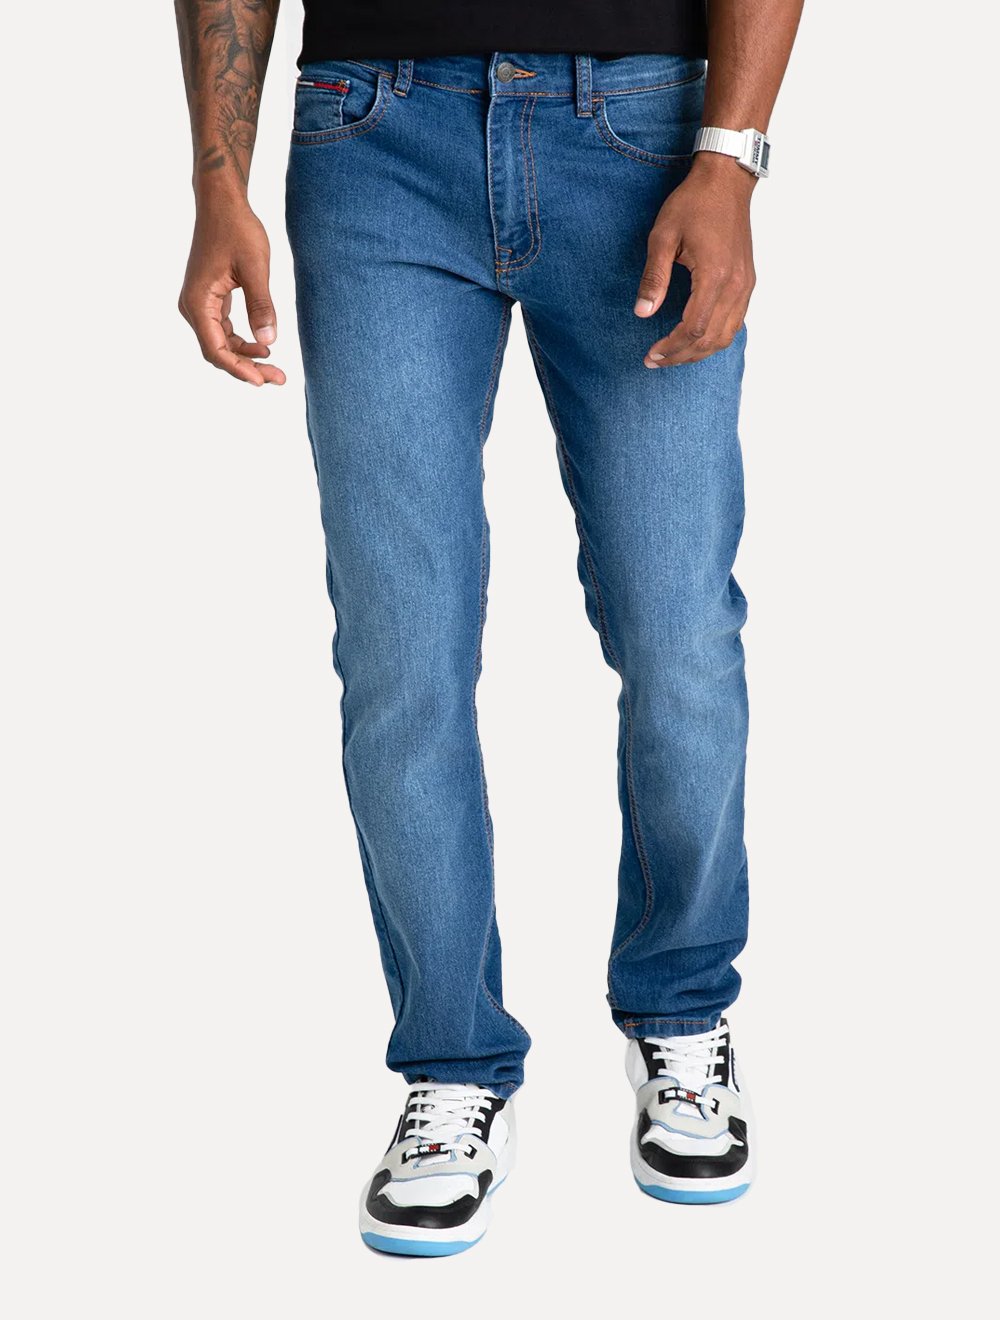 Calça Tommy Jeans Masculina Slim Scanton Stoned Azul